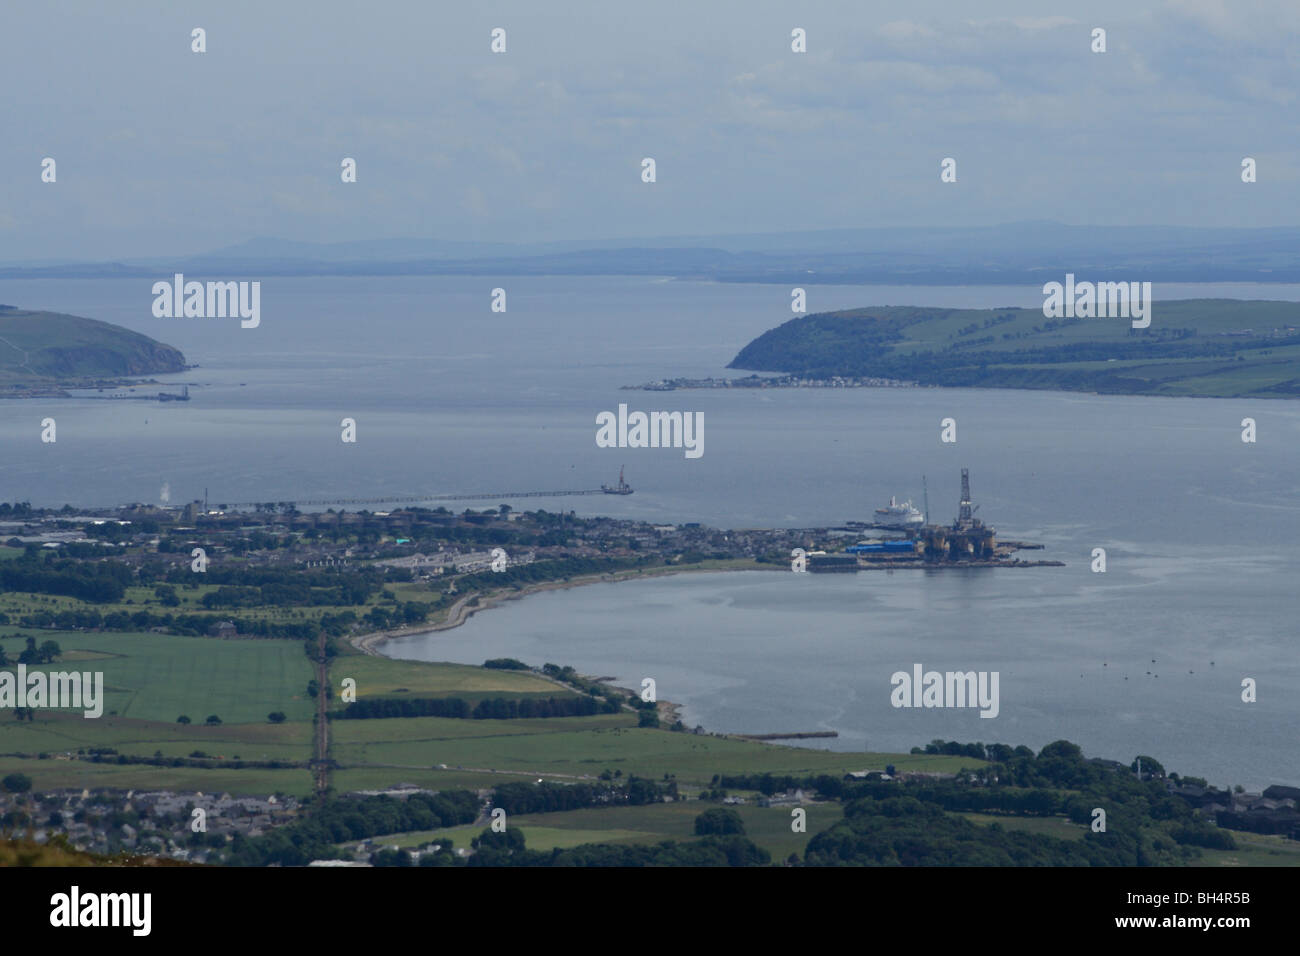 Vista de Cromarty Firth mirando al mar del Norte con Alness, Cromarty, un crucero de exploración petrolífera y las obras de construcción. Foto de stock